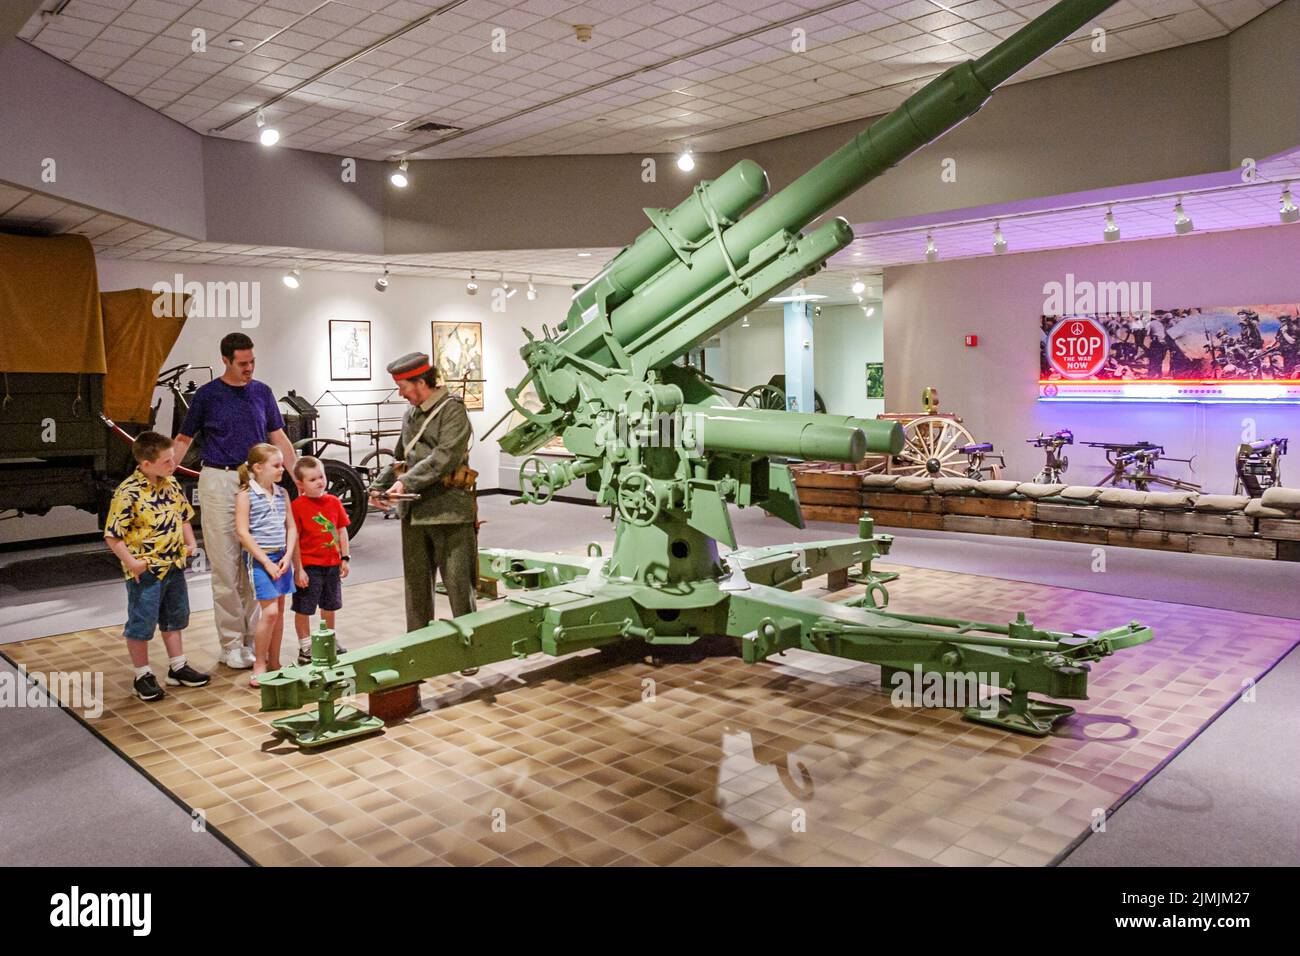 Newport News Virginia, Virginia War Museum, historia exposición colección mostrar arma artillería familia buscando niño niña padre guía explicando Foto de stock